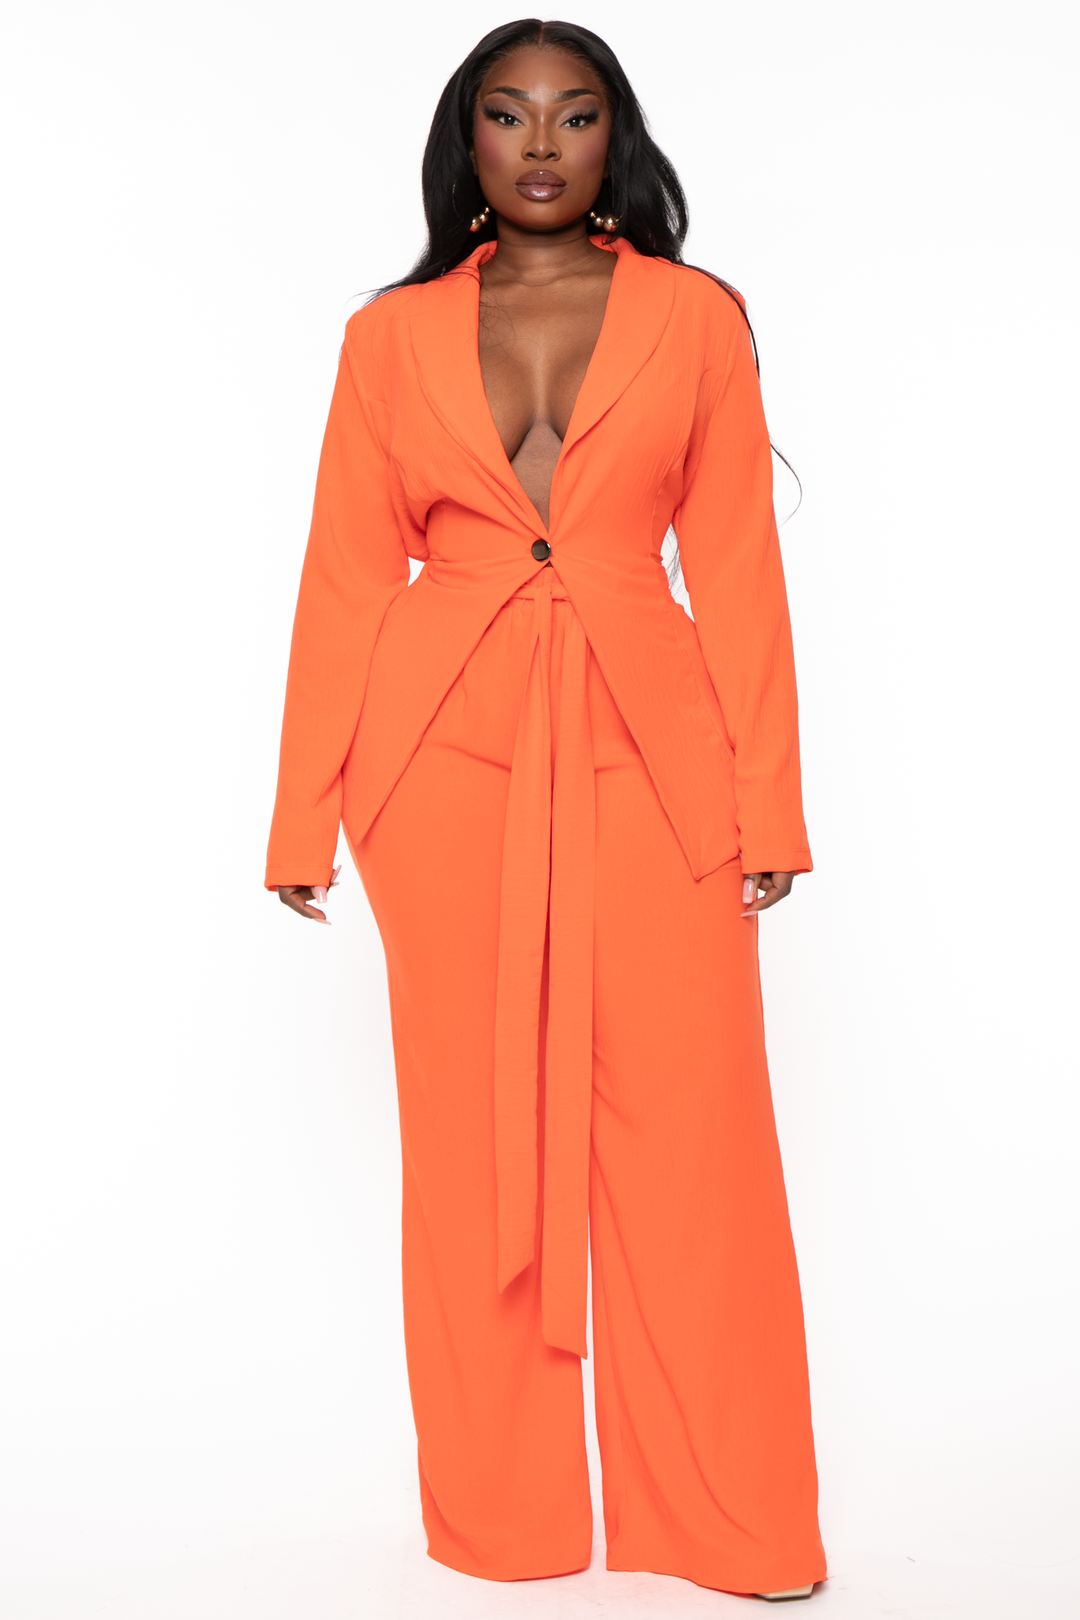 Plus Size HBIC Pant Suit - Orange